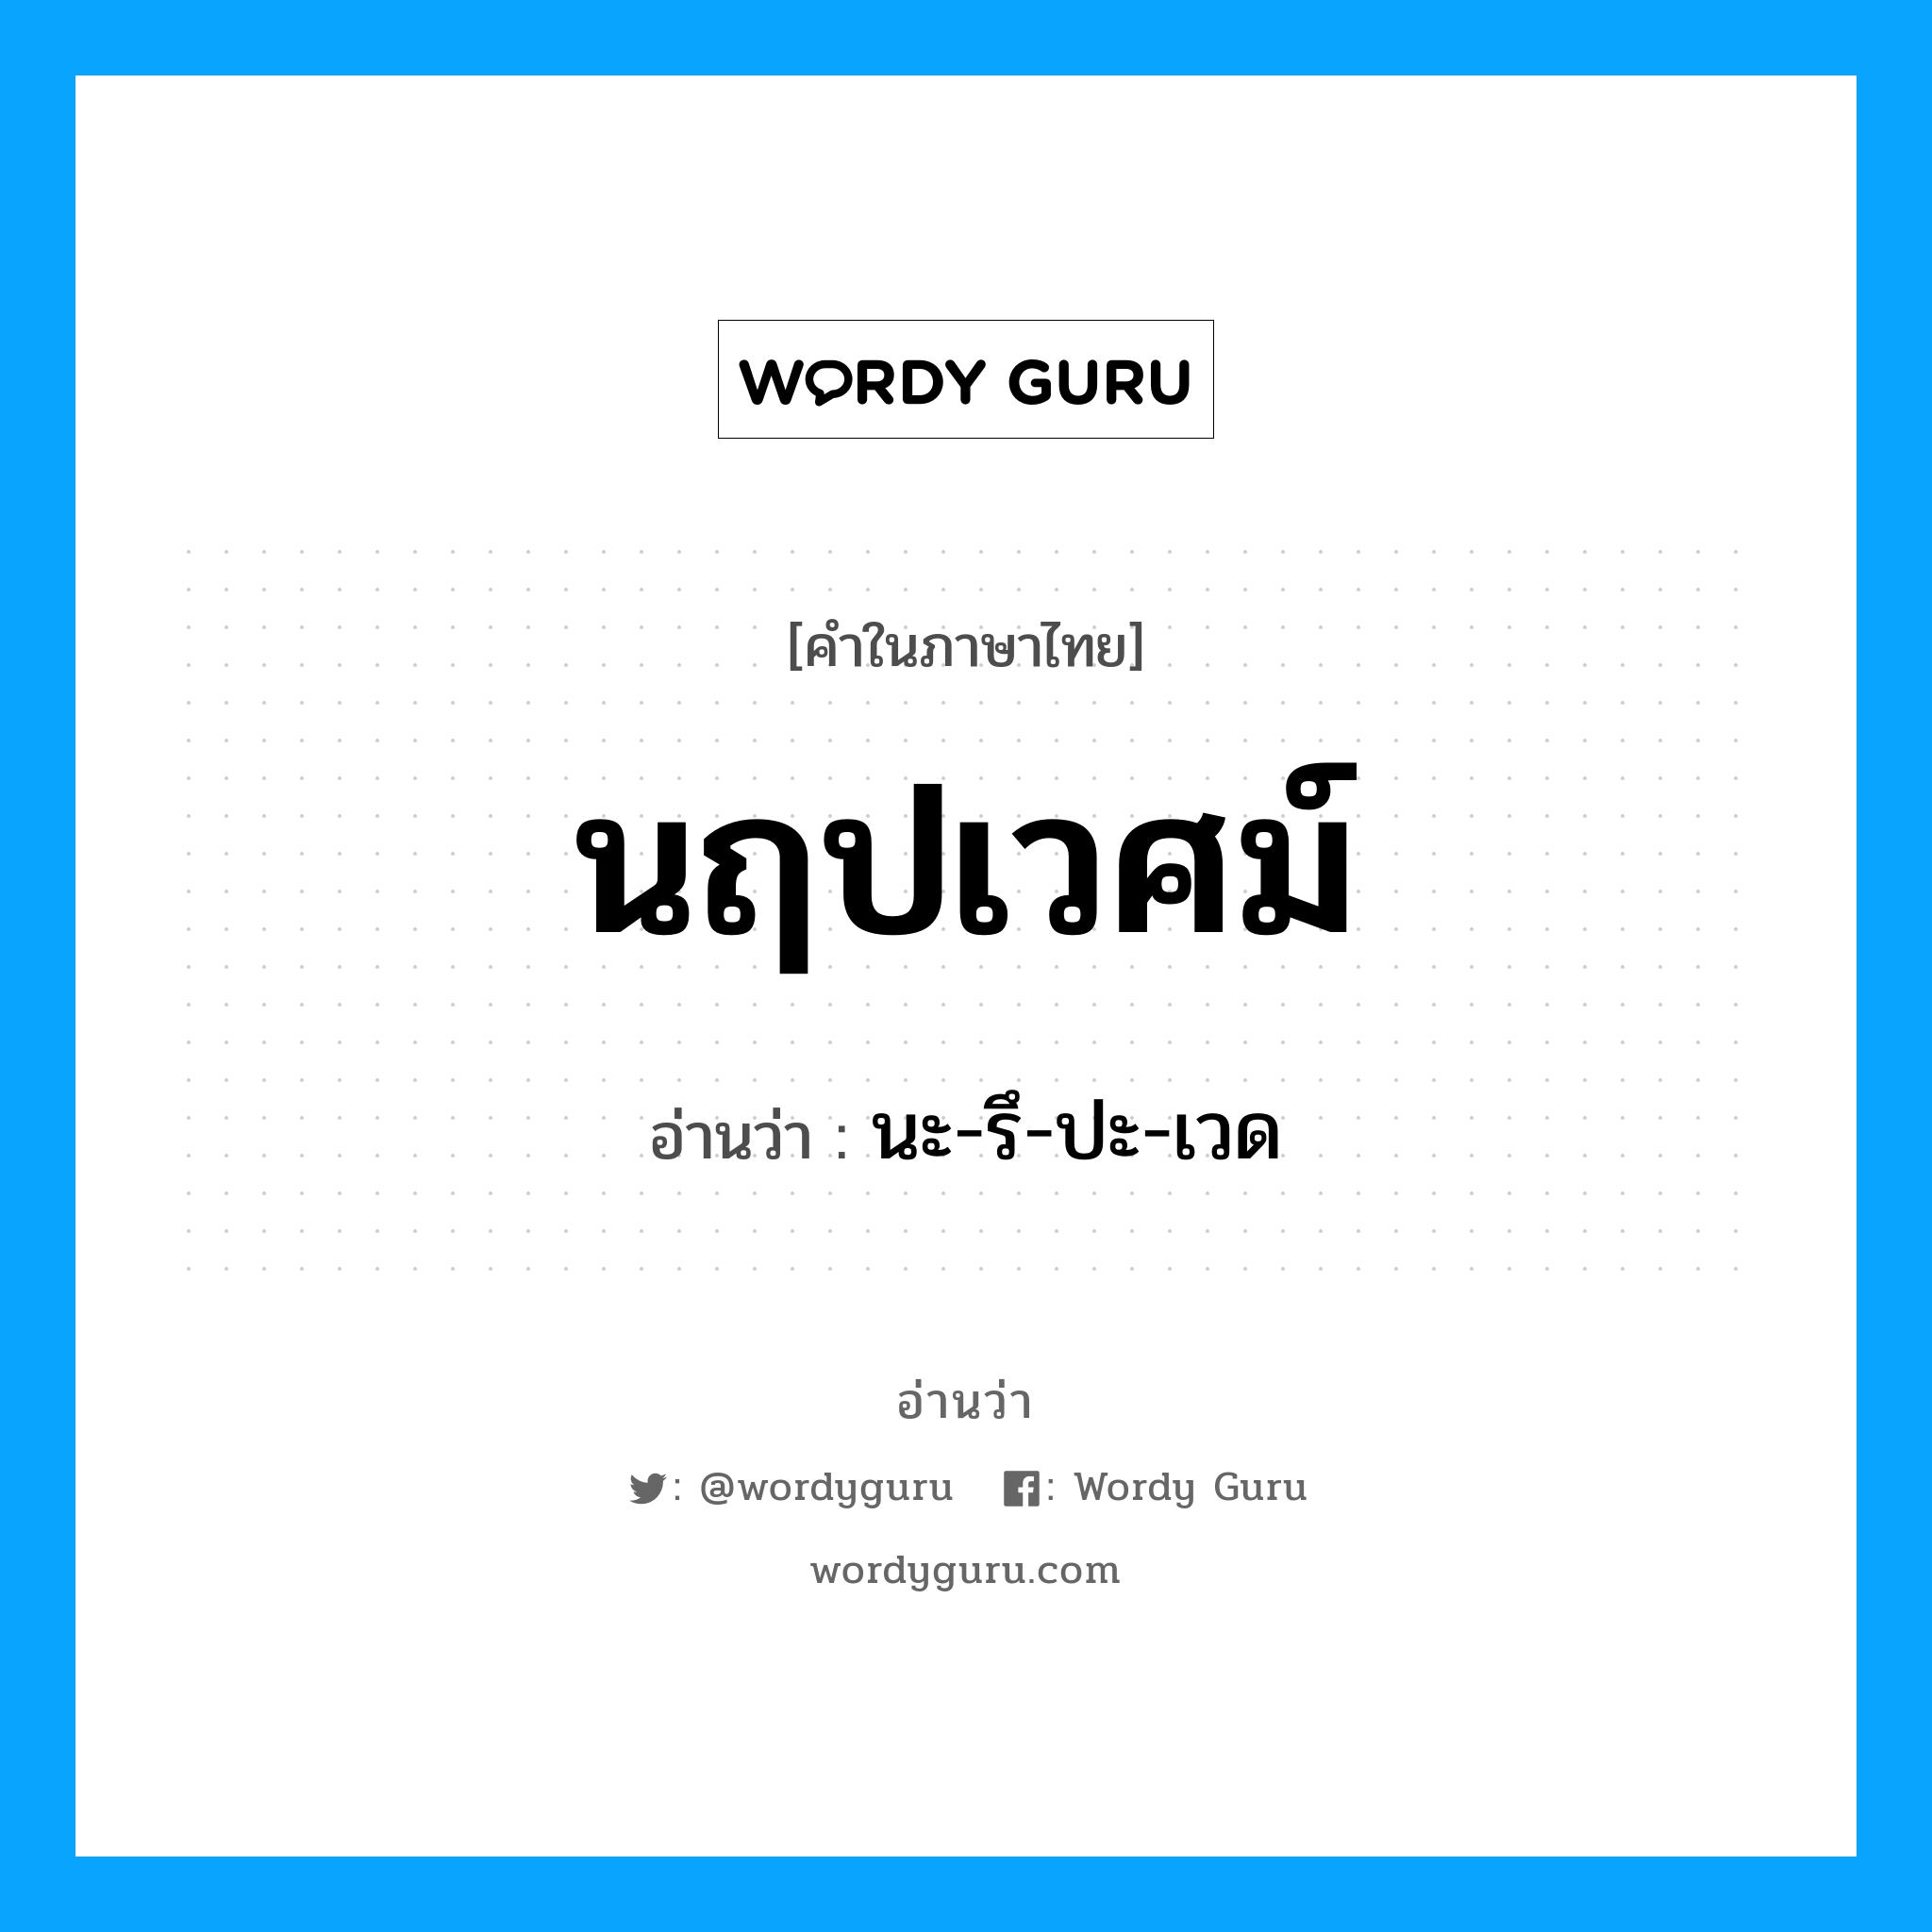 นะ-รึ-ปะ-เวด เป็นคำอ่านของคำไหน?, คำในภาษาไทย นะ-รึ-ปะ-เวด อ่านว่า นฤปเวศม์